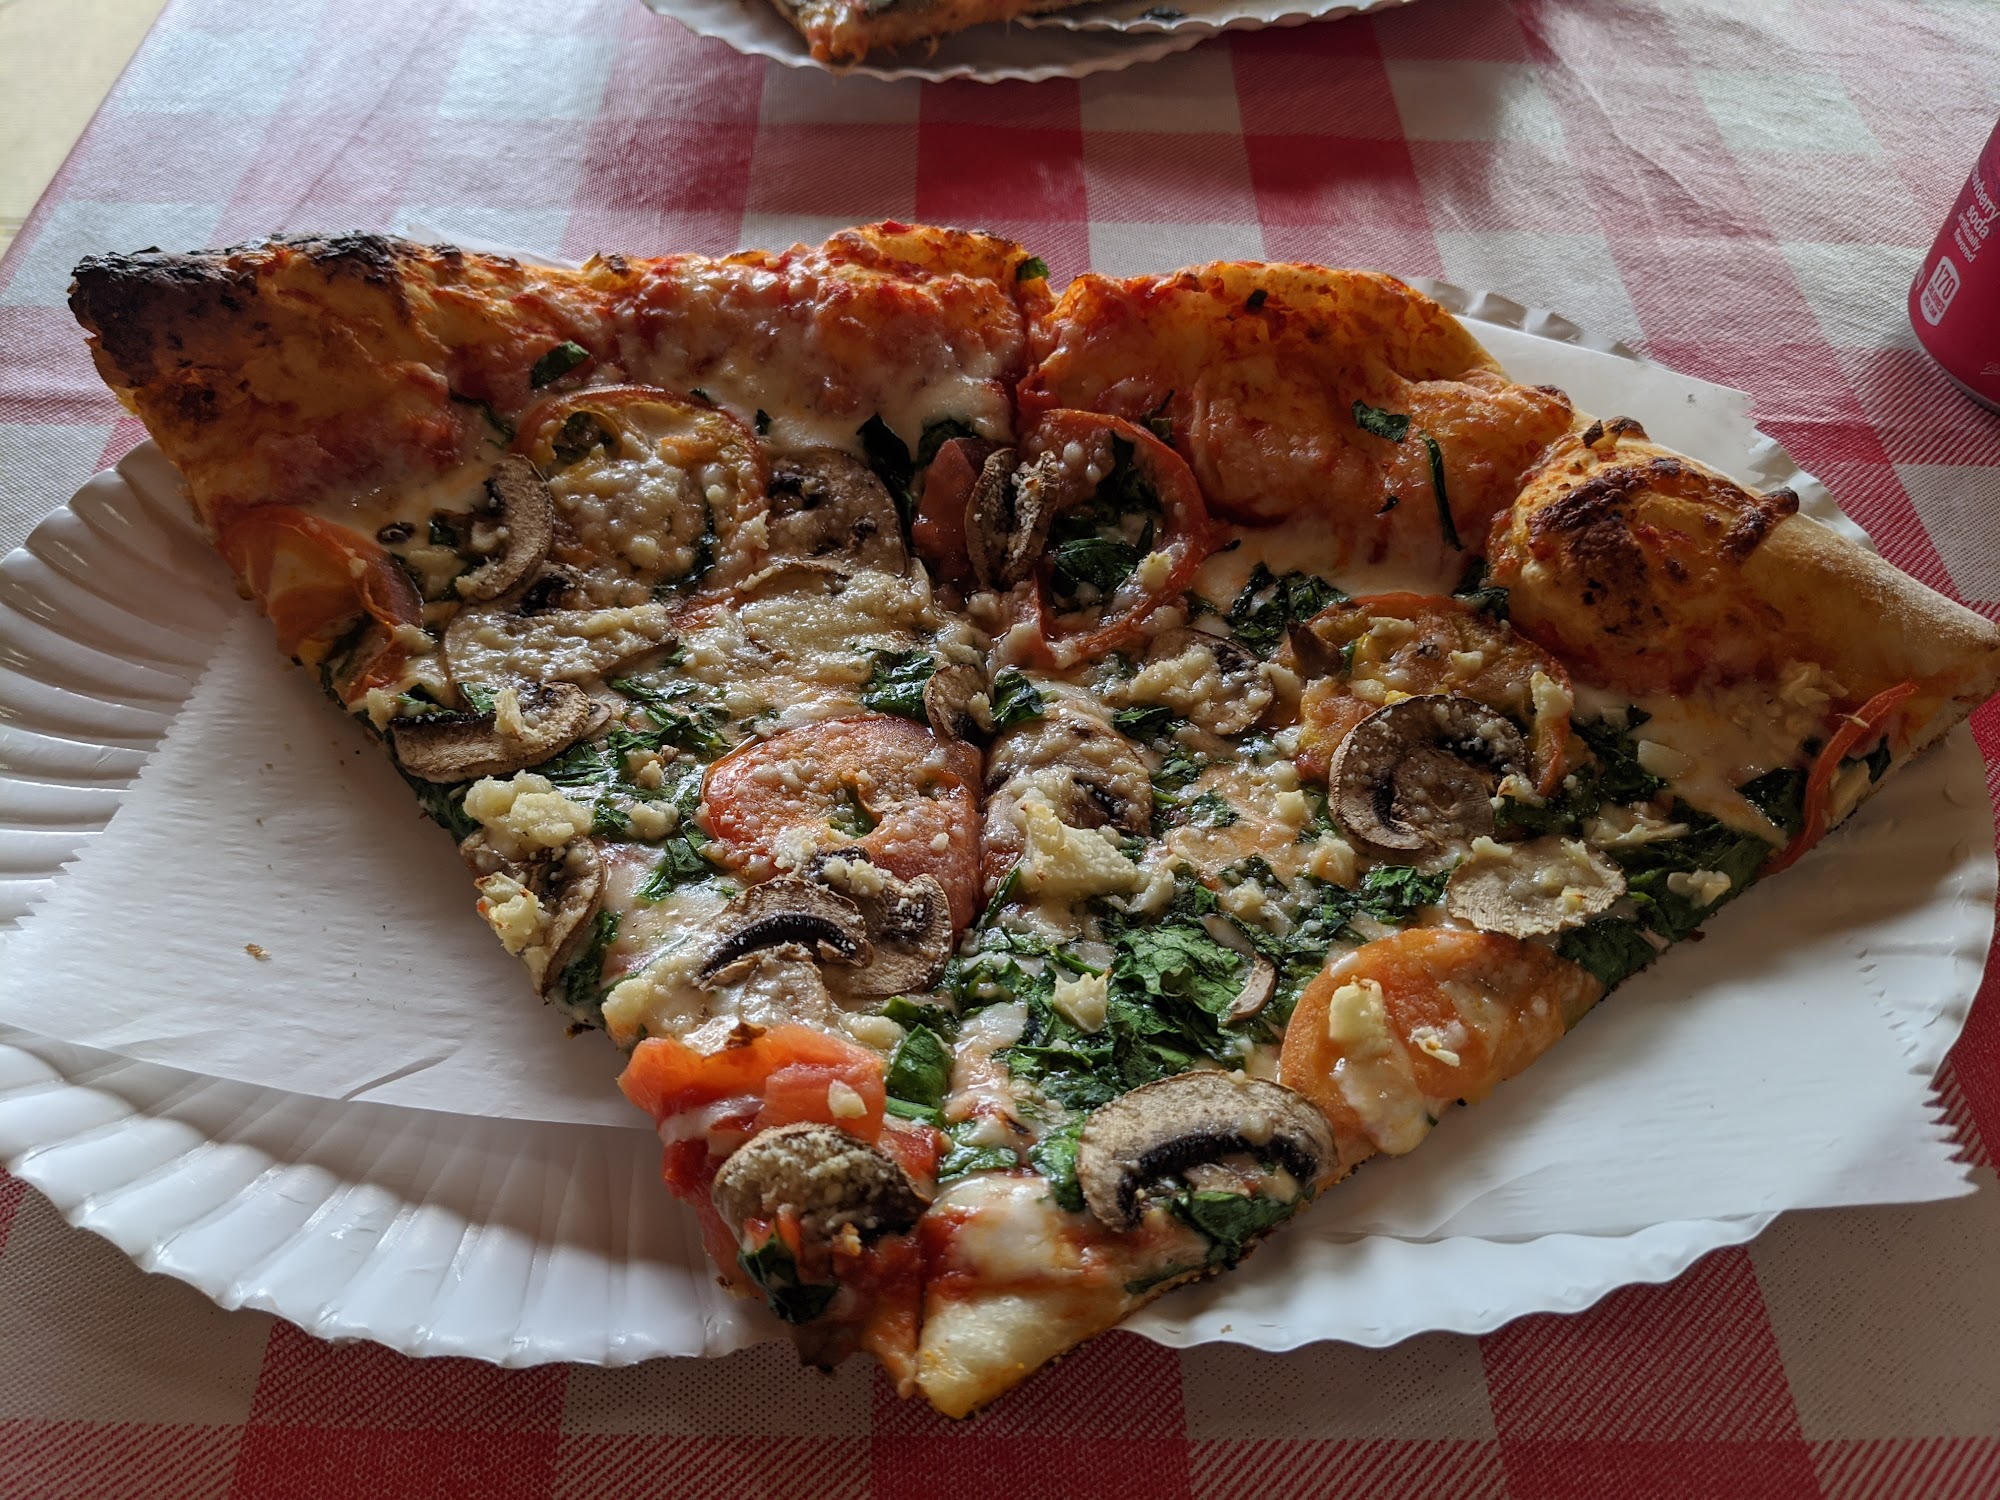 Boston's Pizza Hawaii Kai